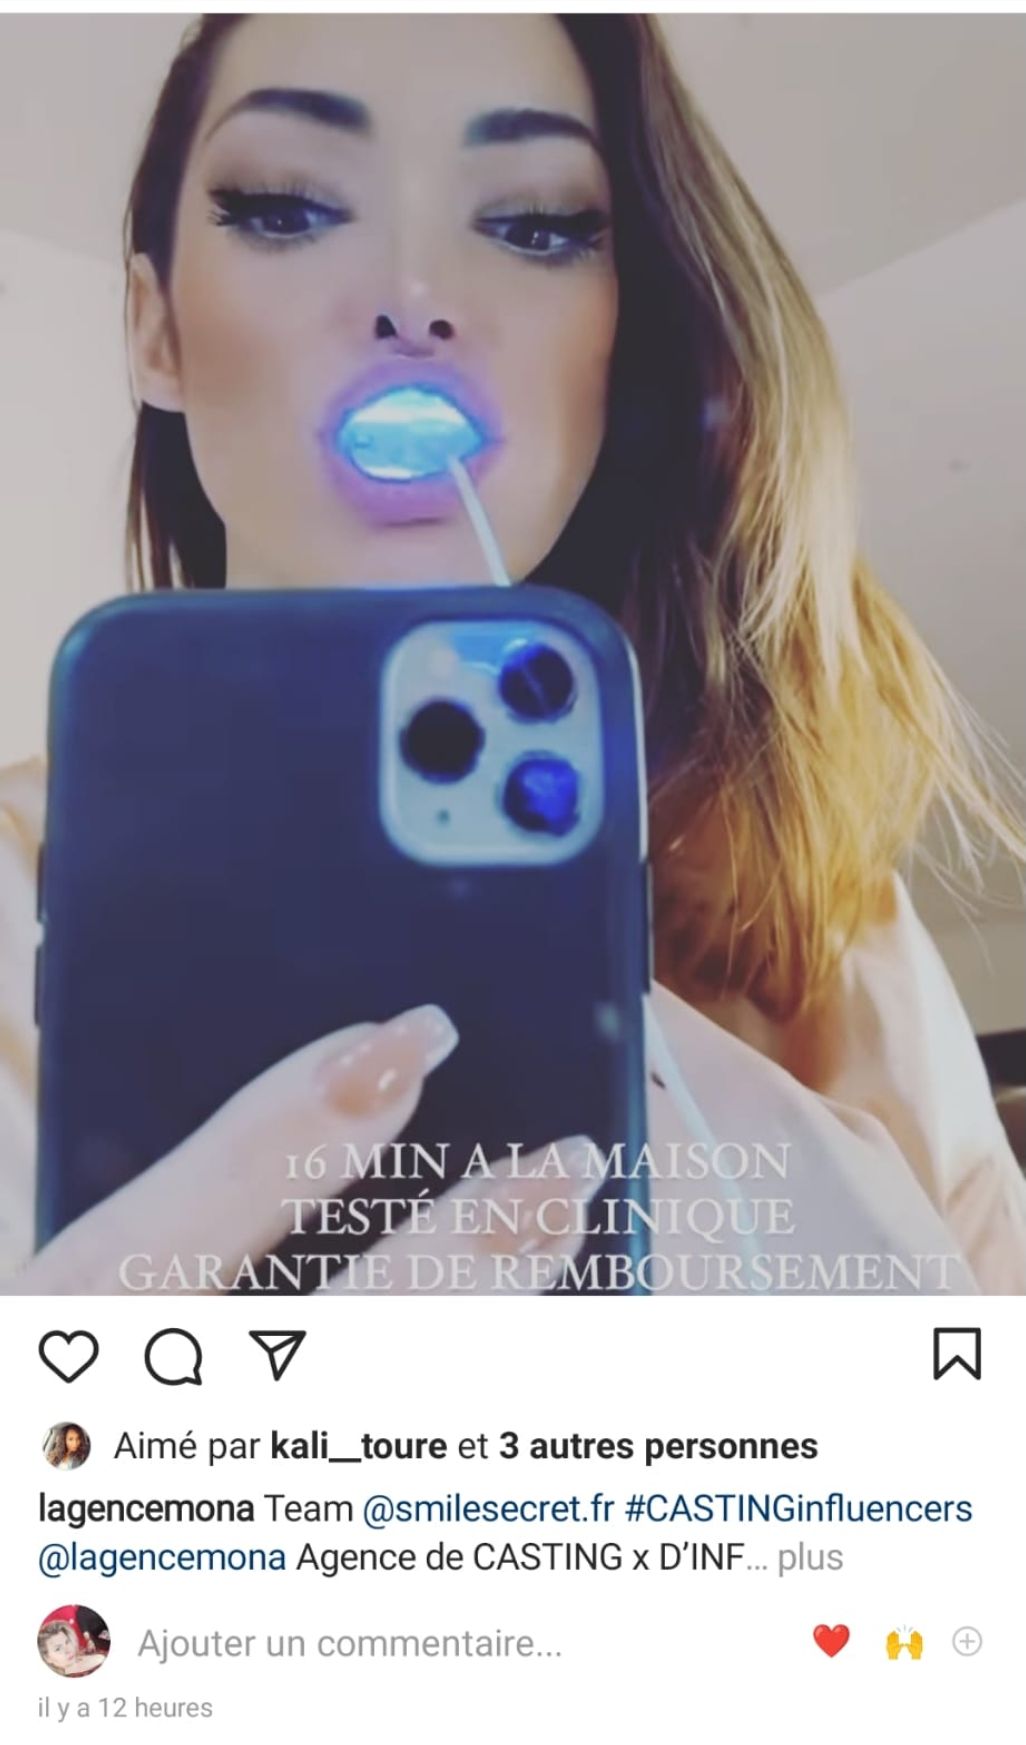  Emilie Nef Naf fait la promotion d'un blanchiment dentaire @Instagram